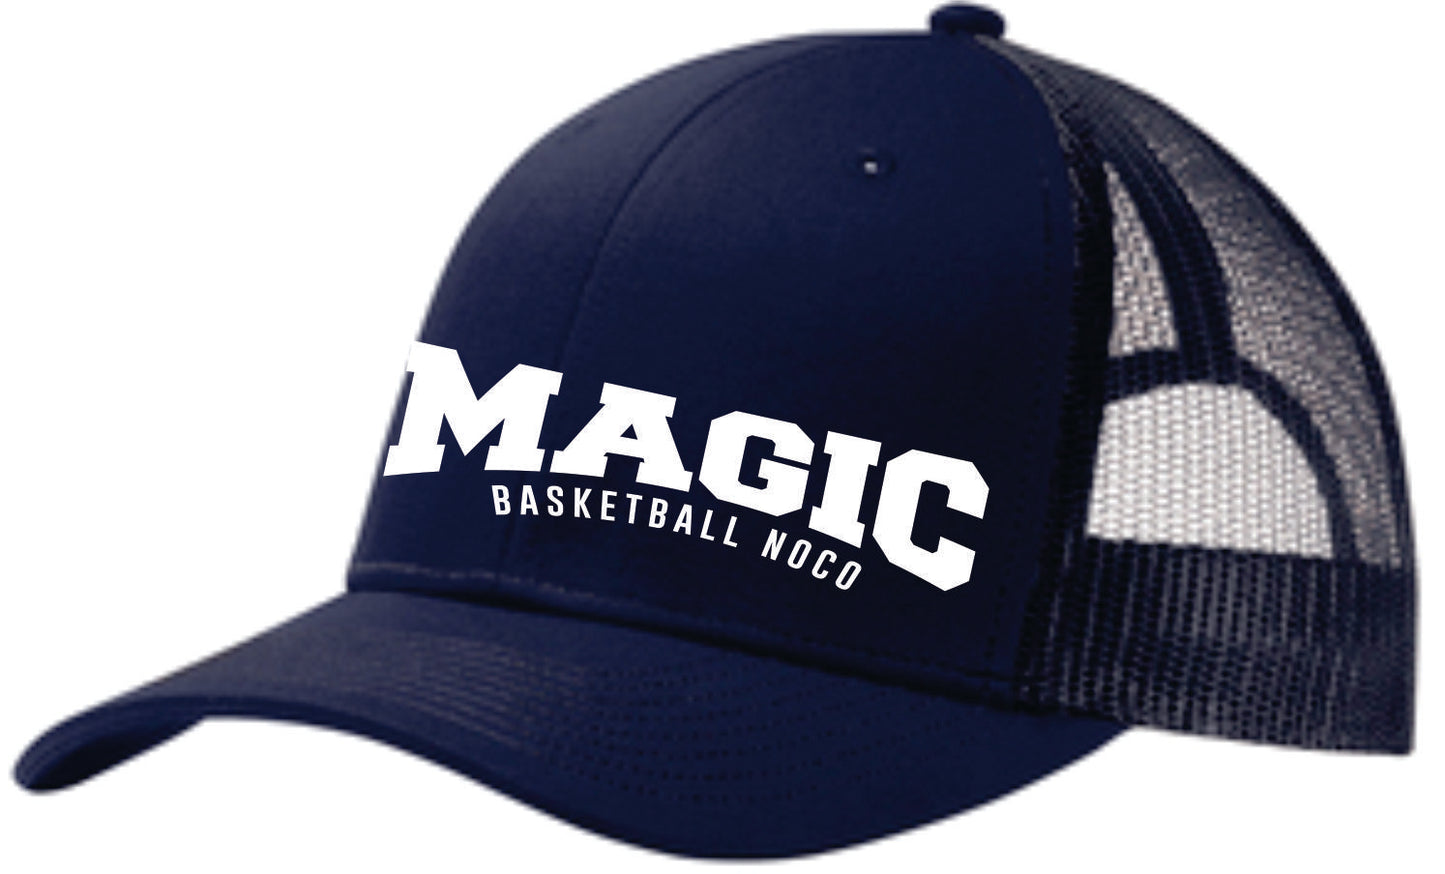 Magic Basketball Fanwear Hats